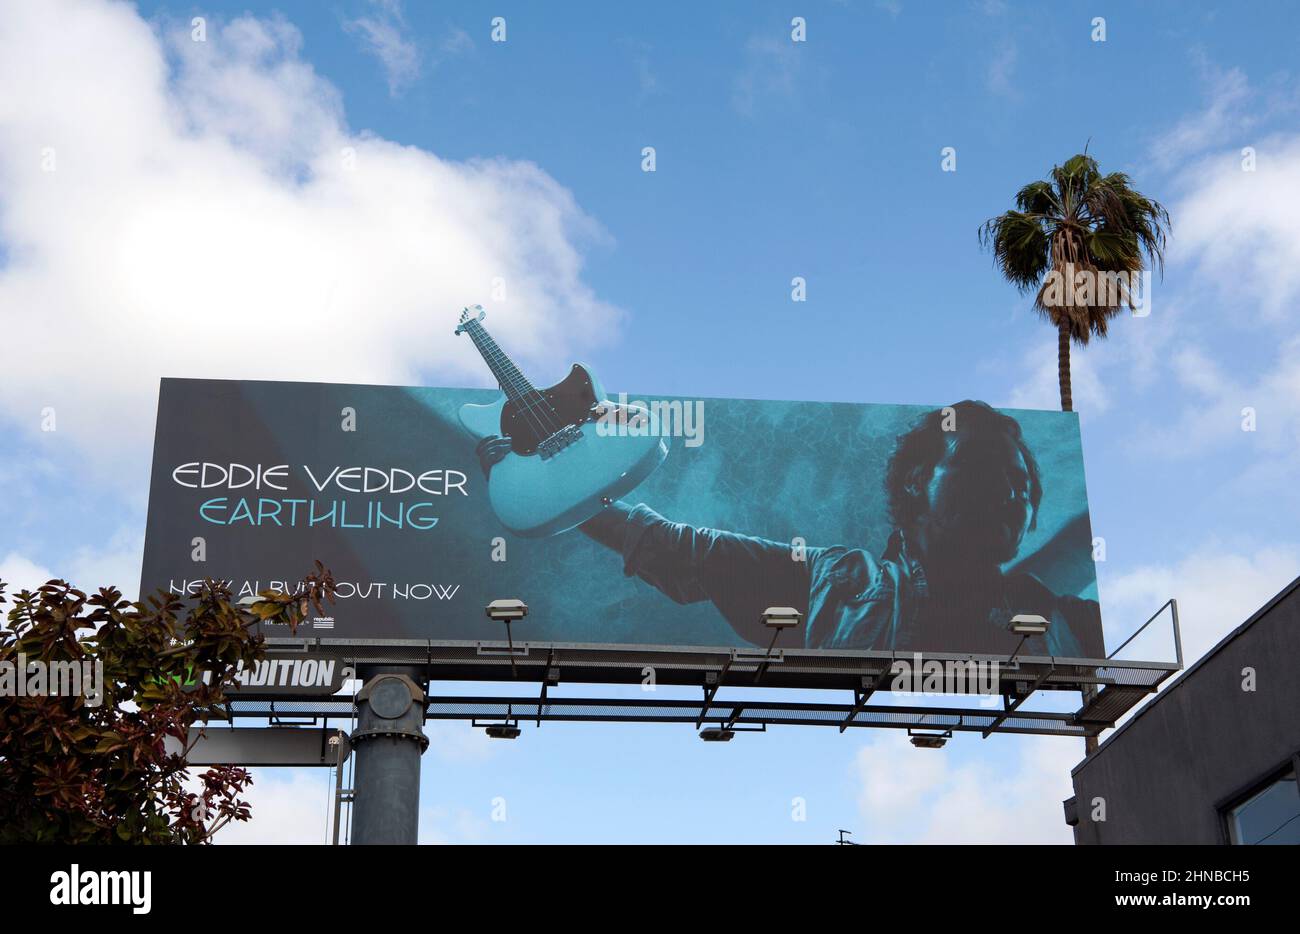 Un cartellone a Los Angeles annuncia l'uscita di un nuovo album di Eddie Vedder intitolato Earthling. Foto Stock